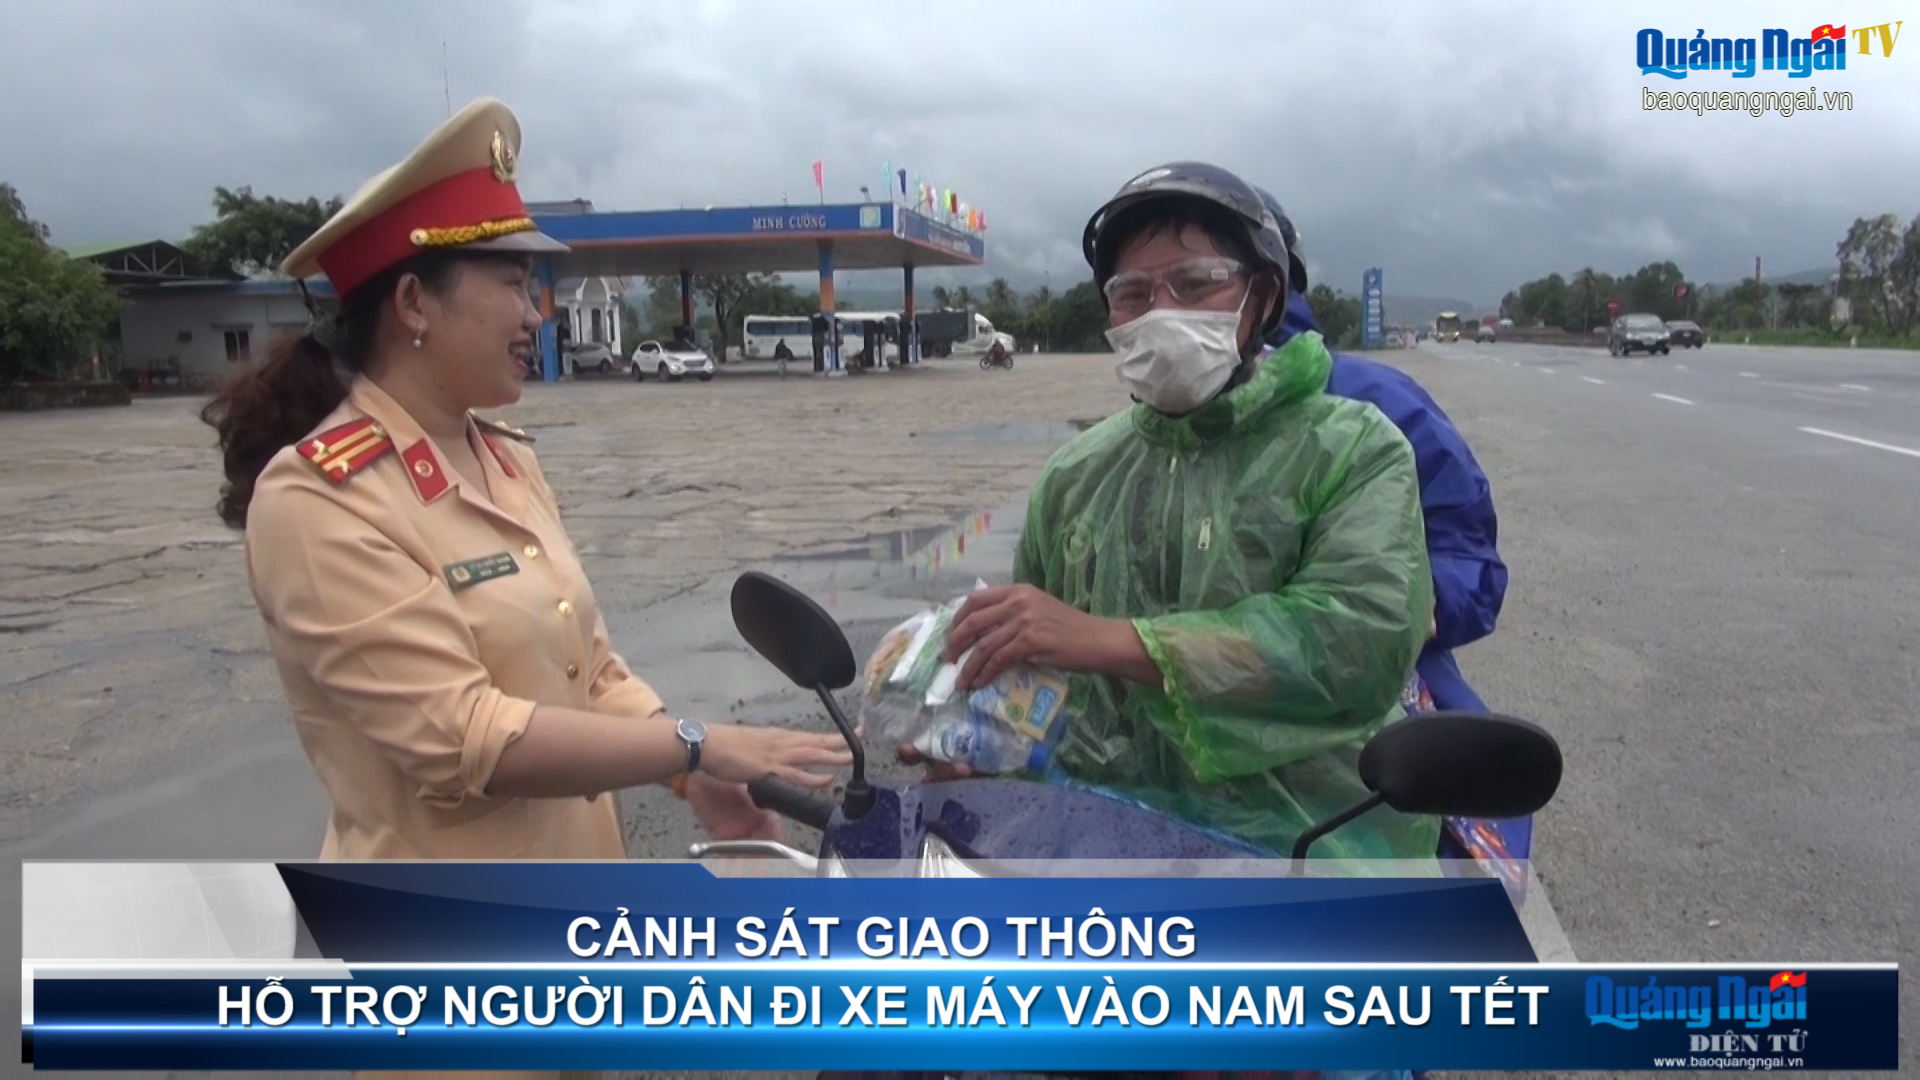 Video: Cảnh sát giao thông hỗ trợ người dân đi xe máy vào Nam sau Tết